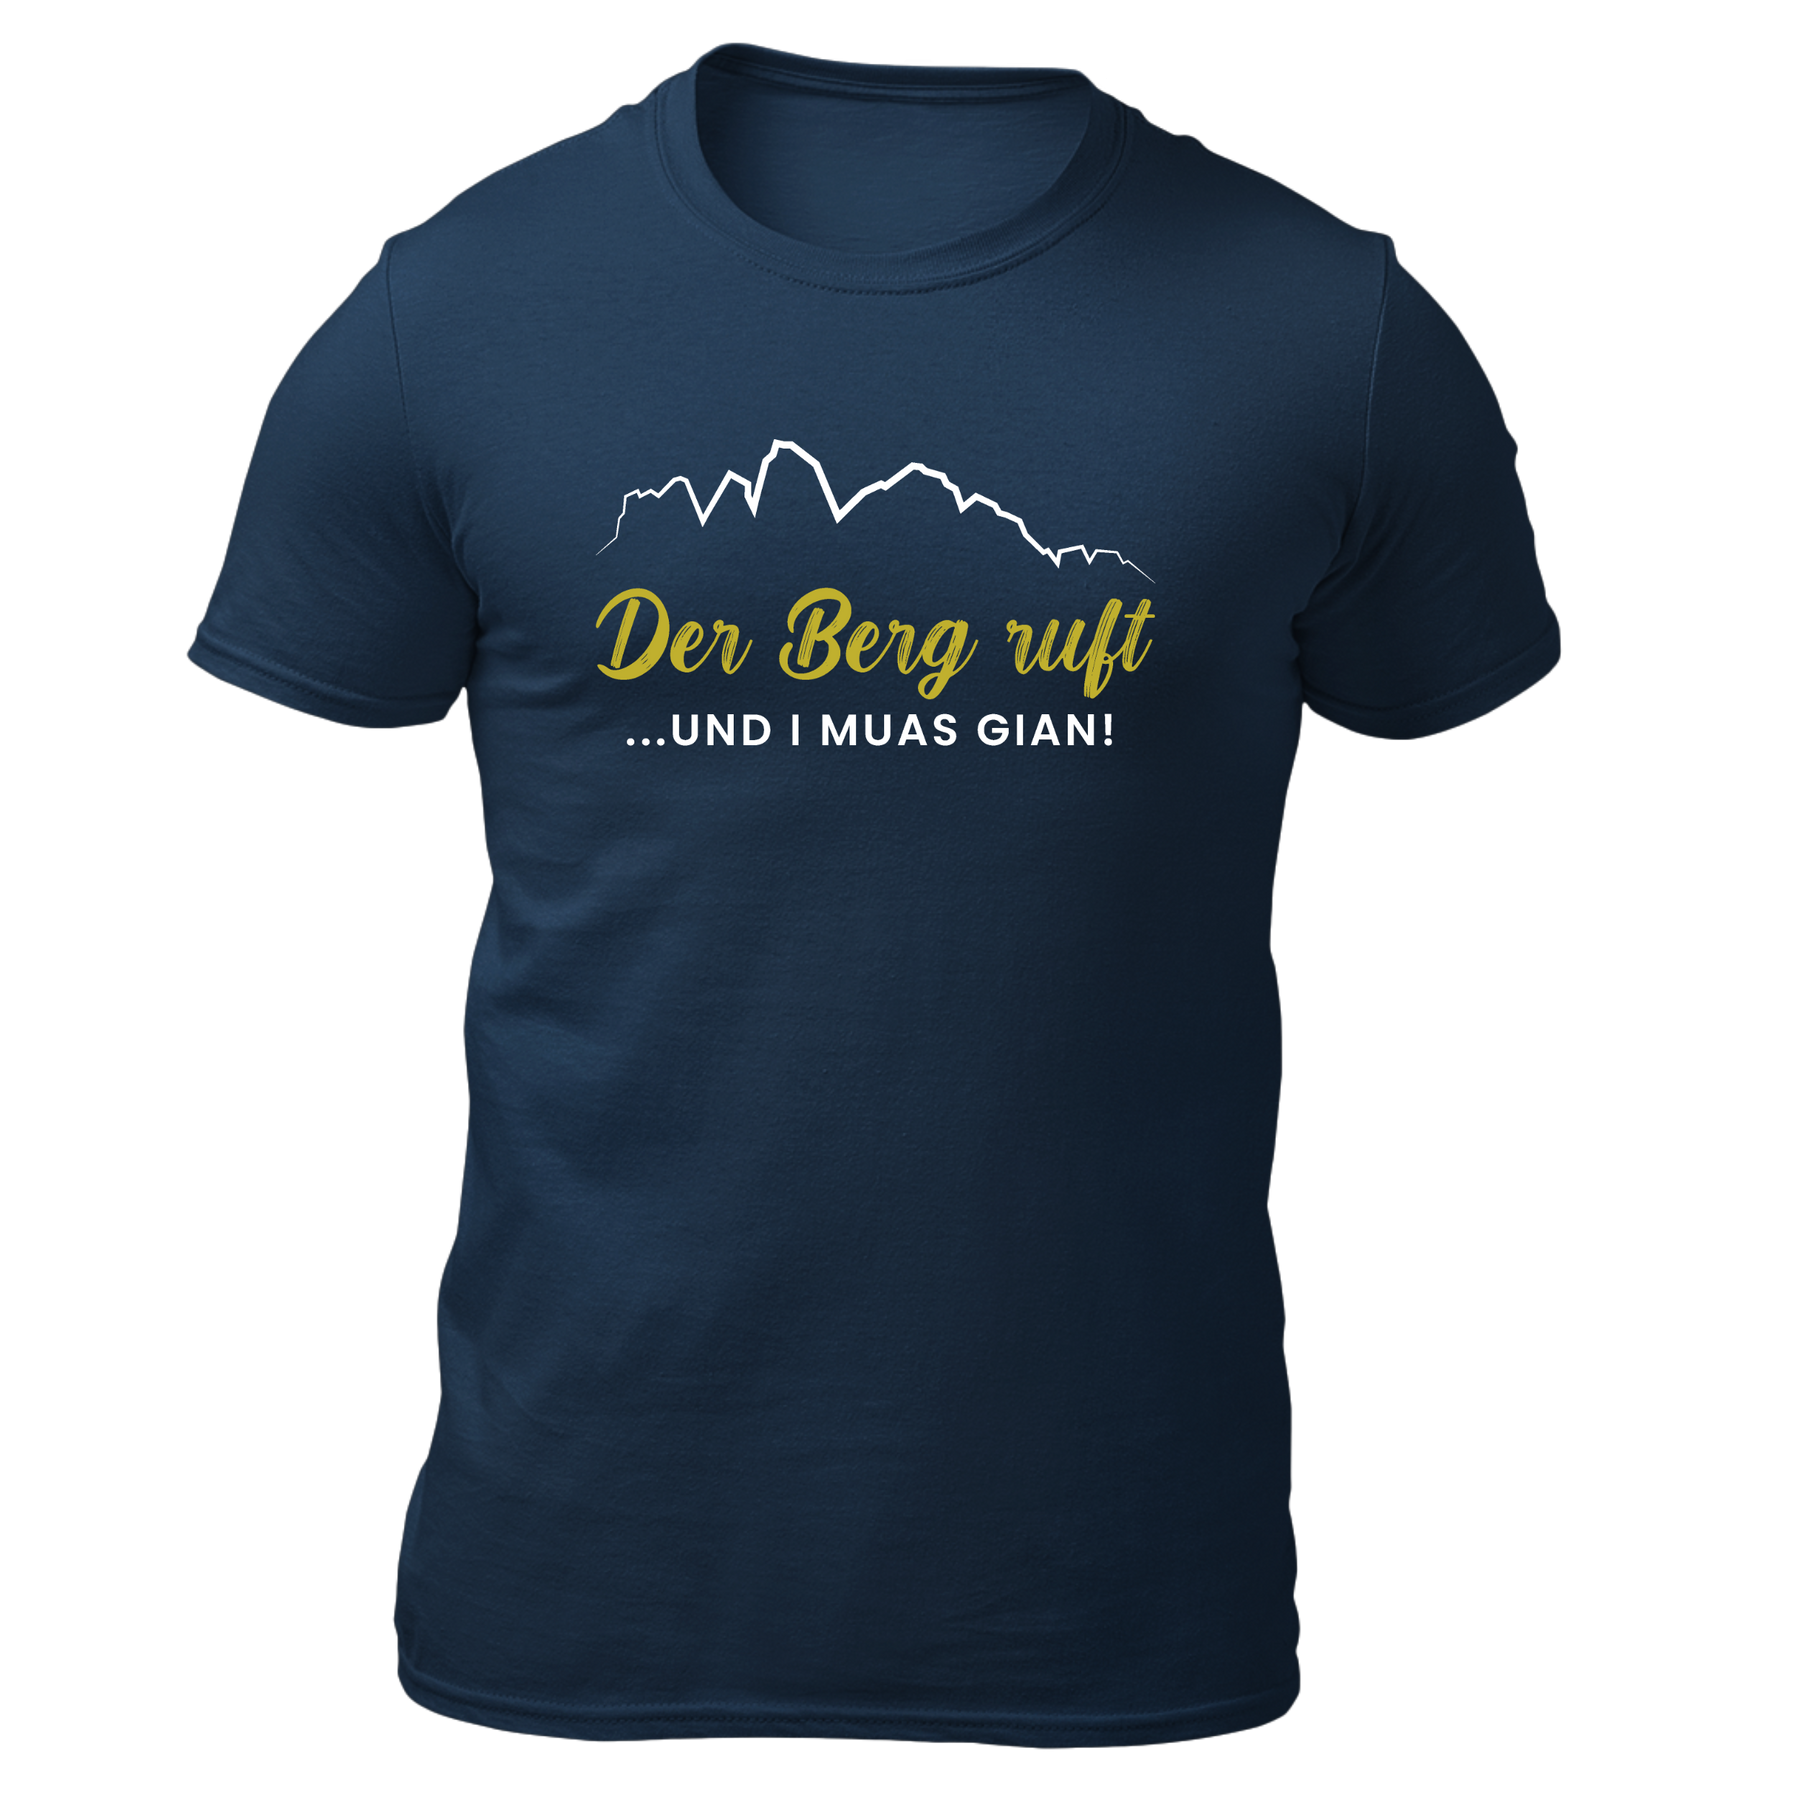 Der Berg ruft und i muas gian! - Herren Shirt Bio - Navy / S - Shirts & Tops